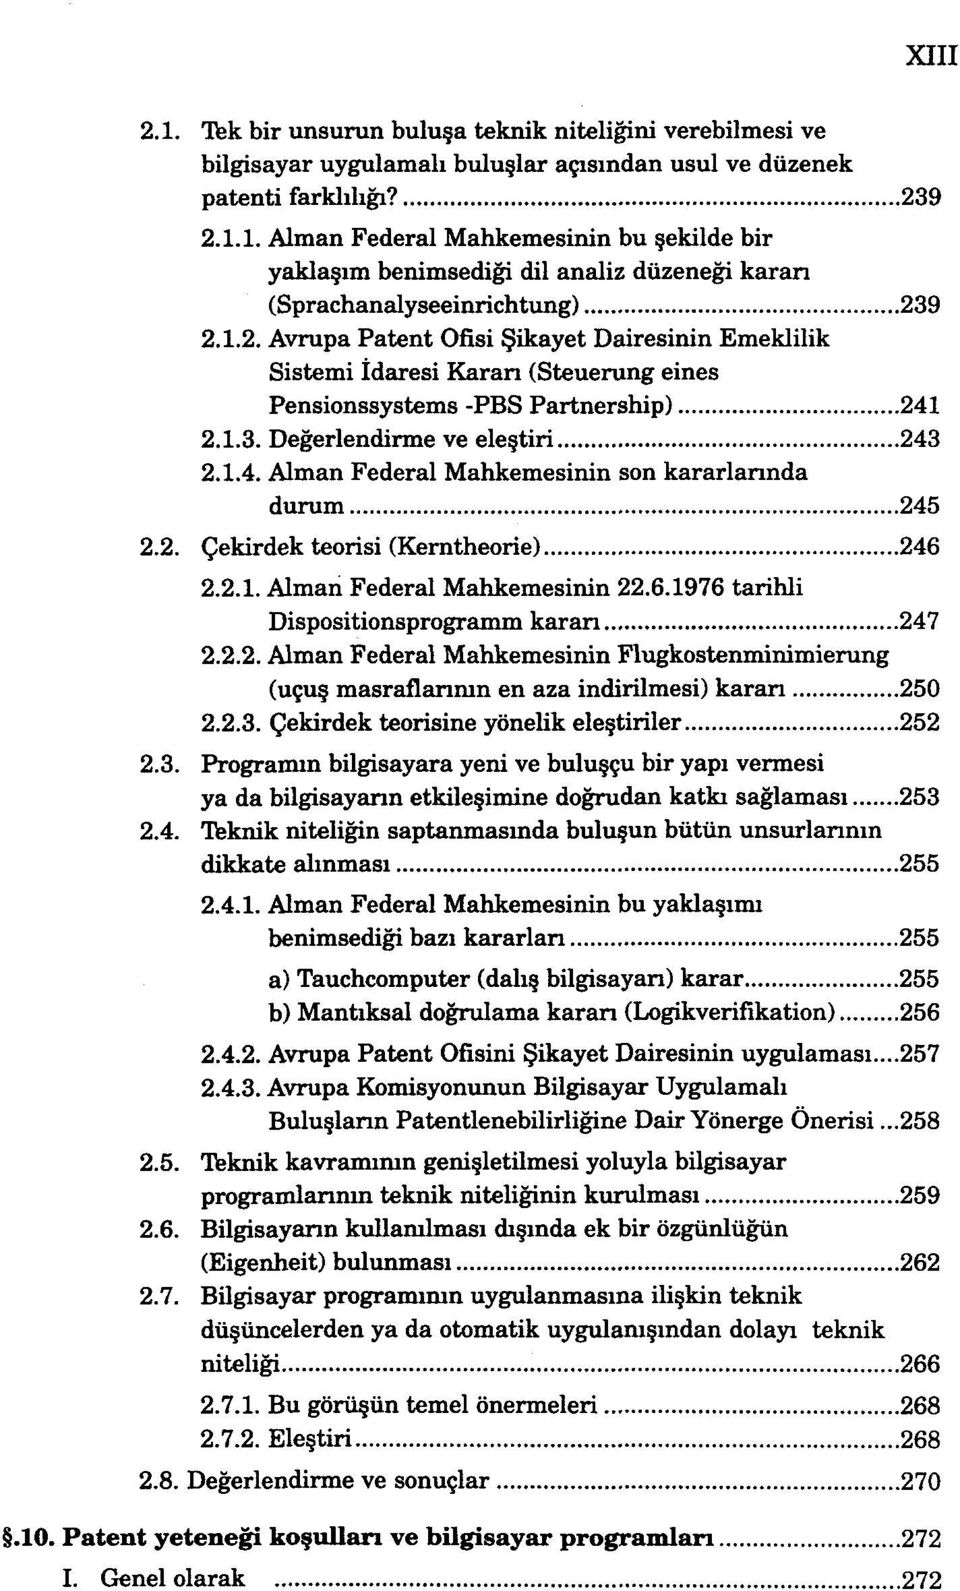 2. Çekirdek teorisi (Kerntheorie) 246 2.2.1. Alman Federal Mahkemesinin 22.6.1976 tarihli Dispositionsprogramm kararı 247 2.2.2. Alman Federal Mahkemesinin Flugkostenminimierung (uçuş masraflarının en aza indirilmesi) kararı 250 2.